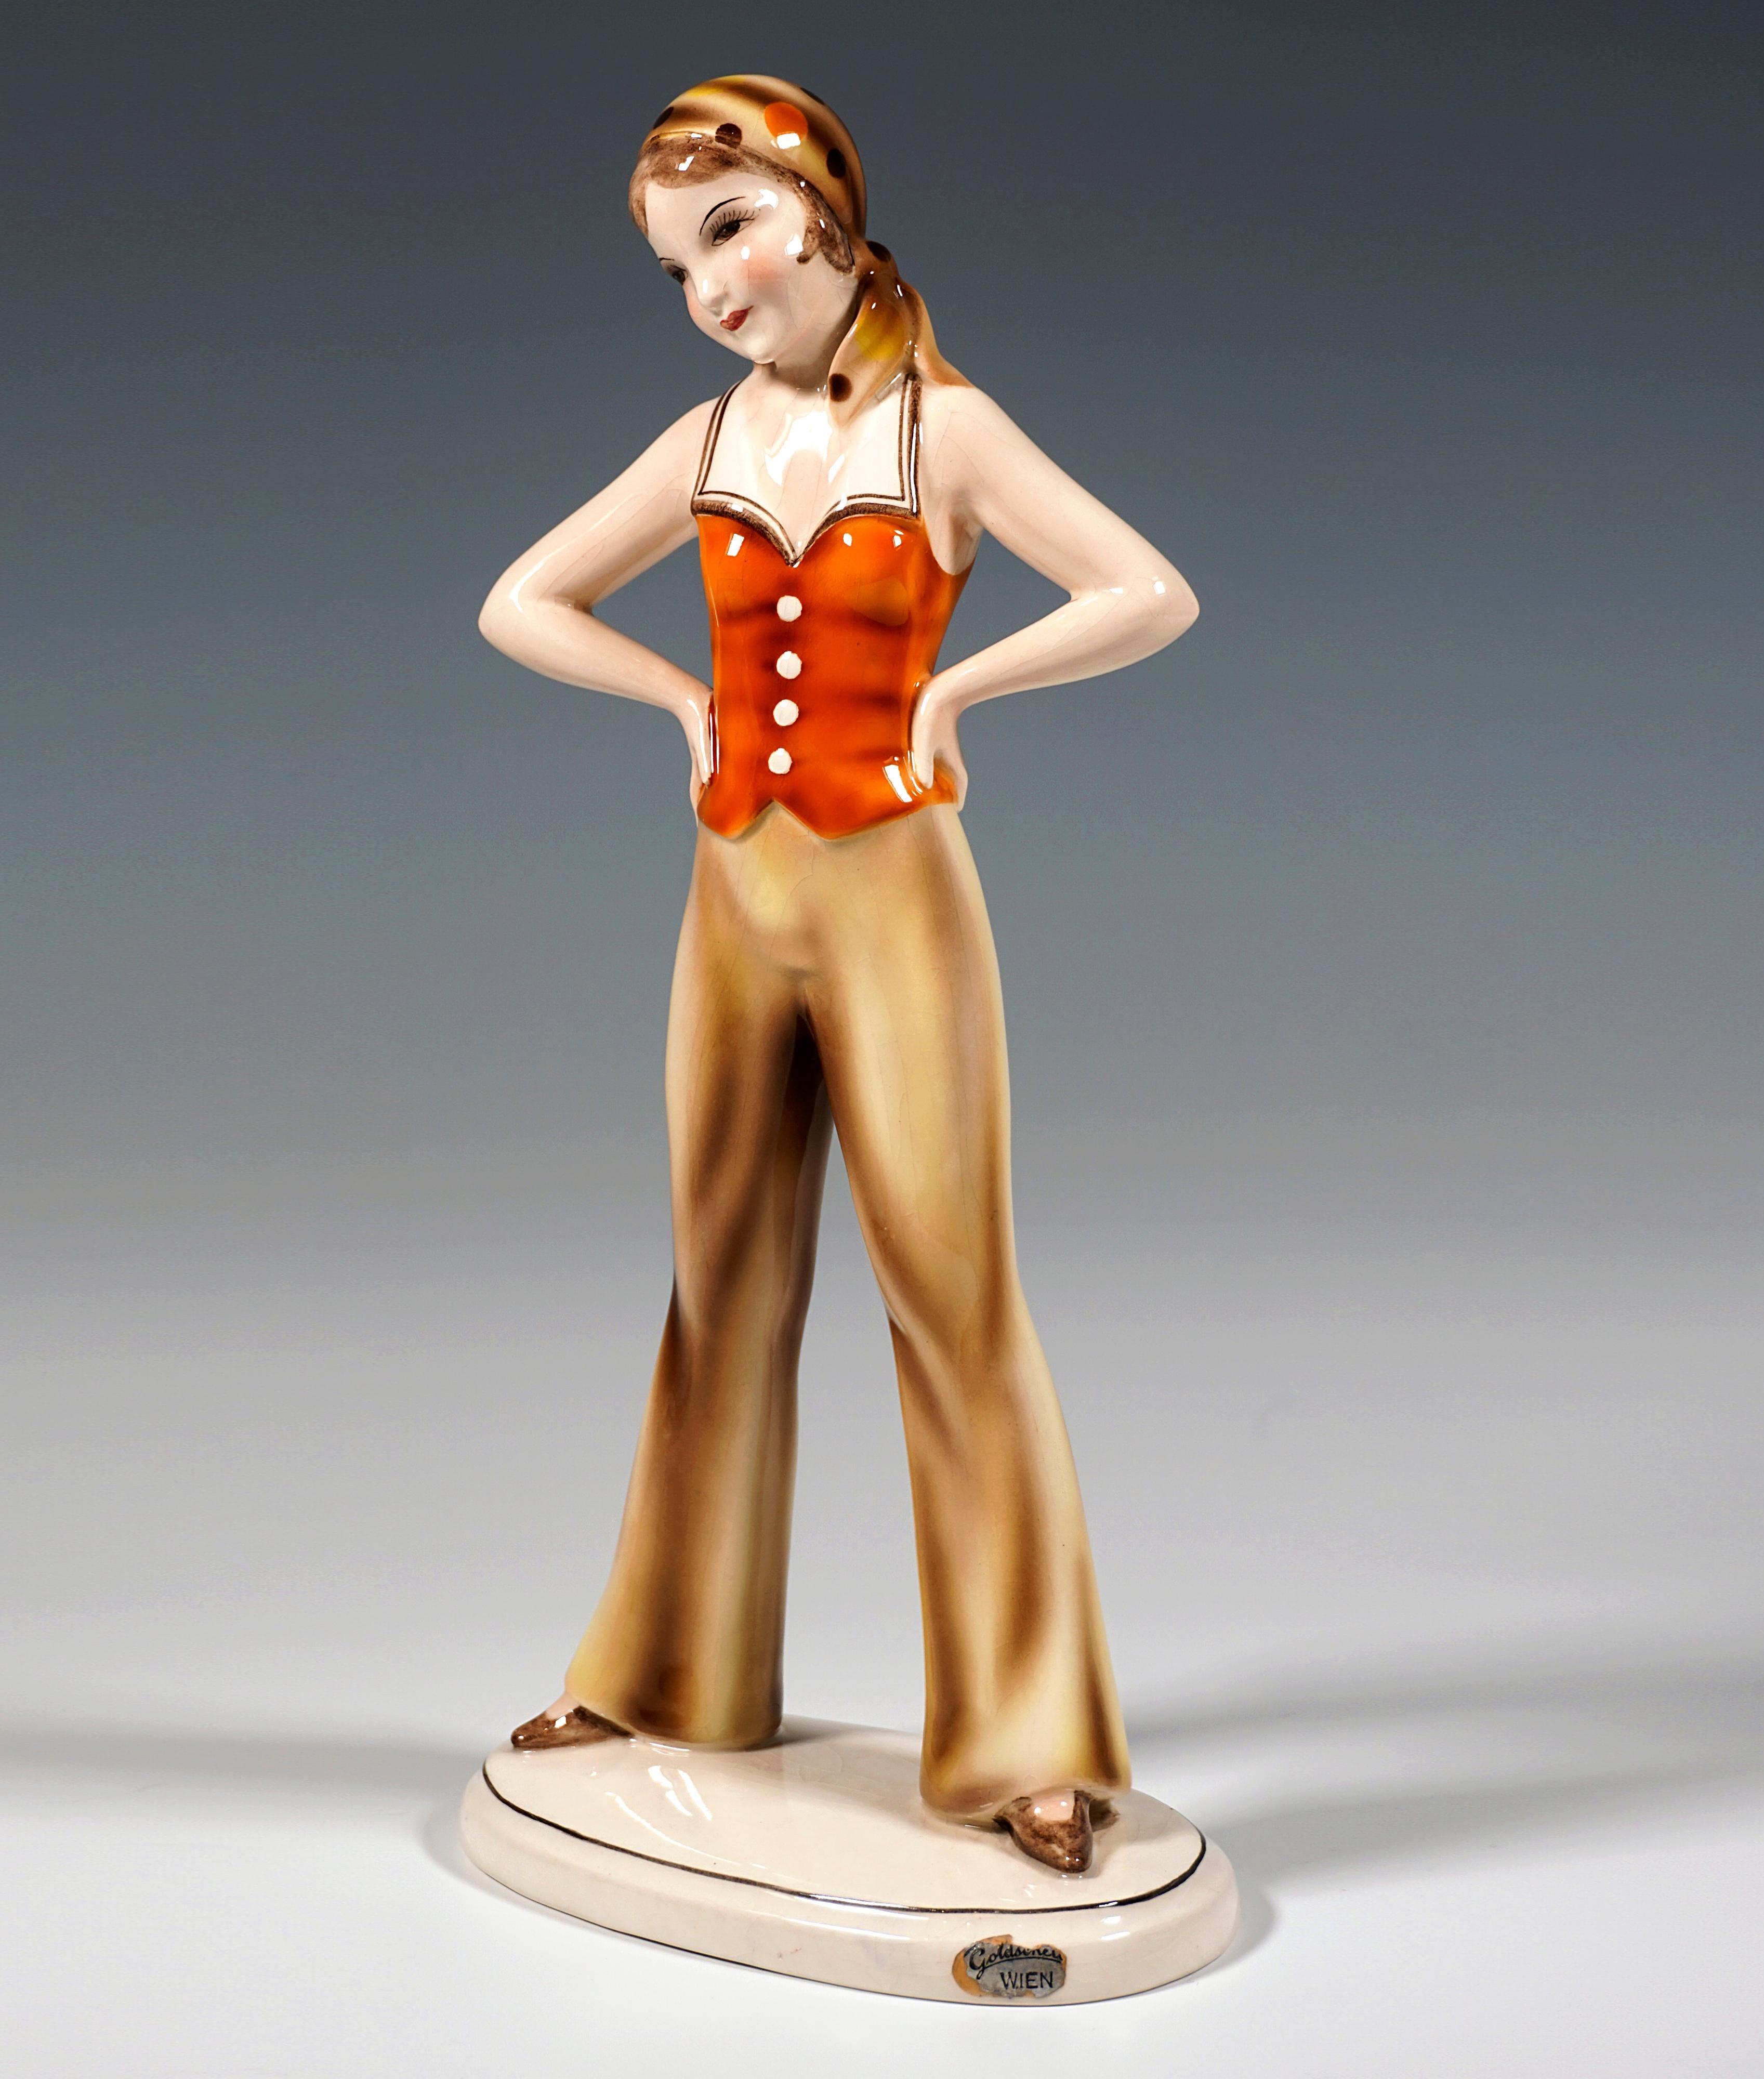 Sehr seltene Kunstkeramik-Figur aus den 1930er Jahren:
Stehendes Mädchen mit gepunktetem Kopftuch in Orange- und Brauntönen, bekleidet mit einem ärmellosen orangefarbenen Oberteil mit weißem Kragen und Knöpfen an der Vorderseite, langen beigen